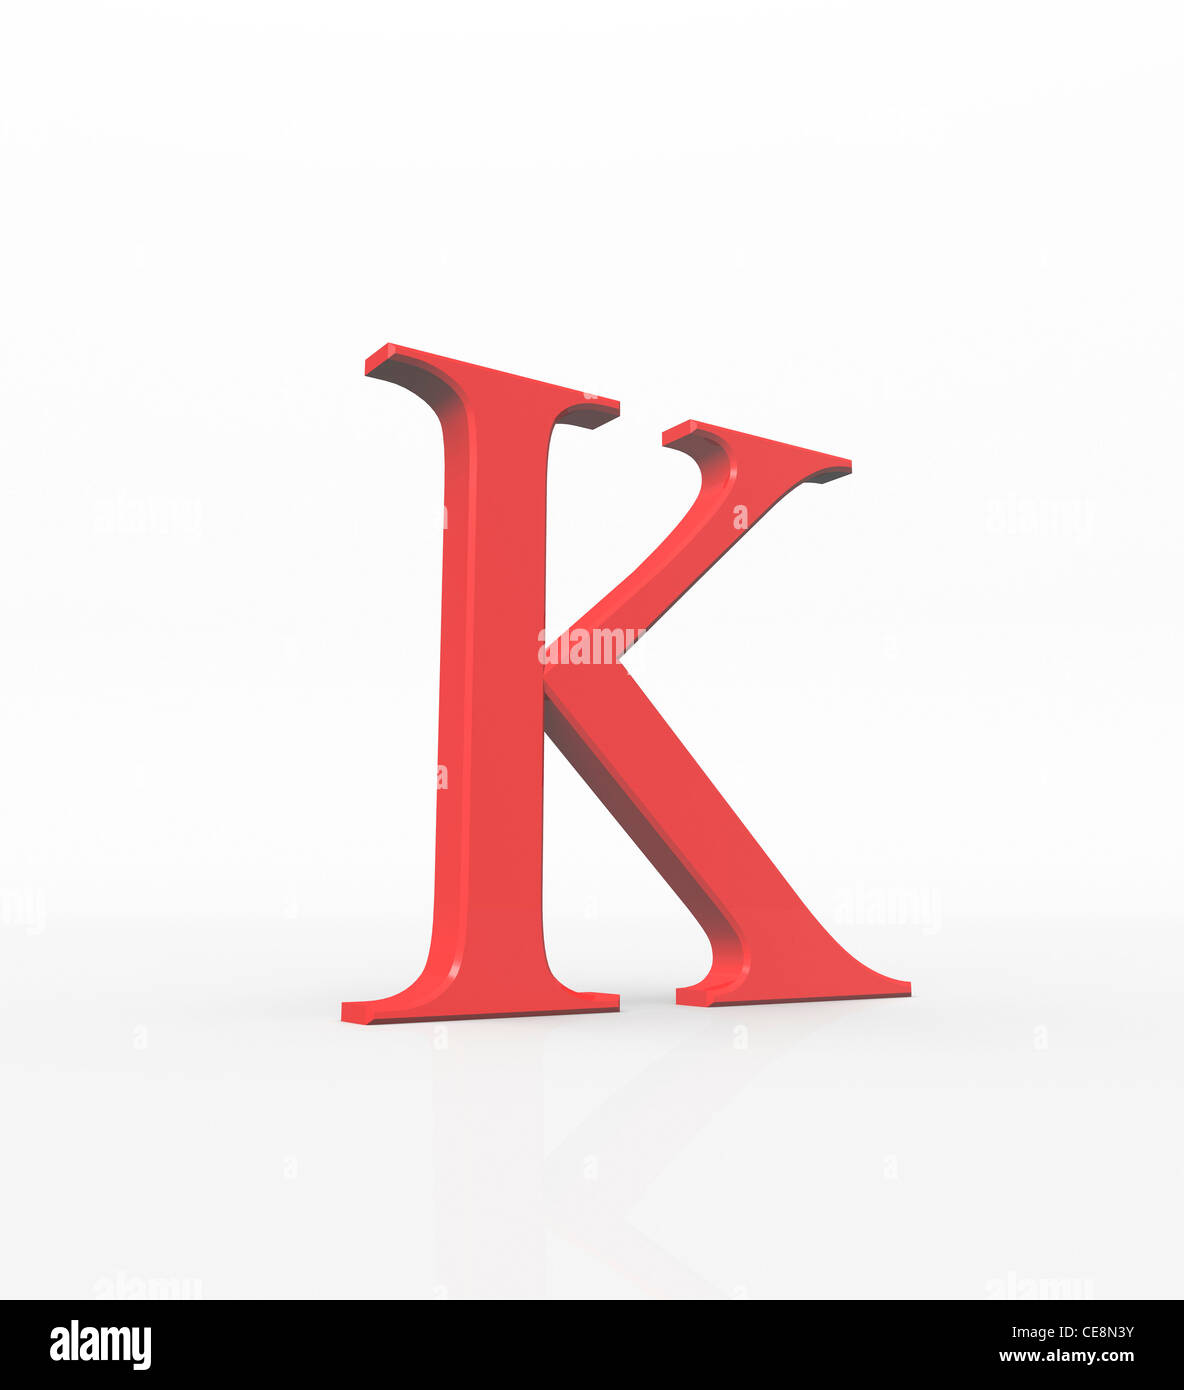 Kappa décima letra del alfabeto griego en el sistema griego de valor  números 20 letras minúsculas comúnmente usado en geometría matemáticas  Fotografía de stock - Alamy